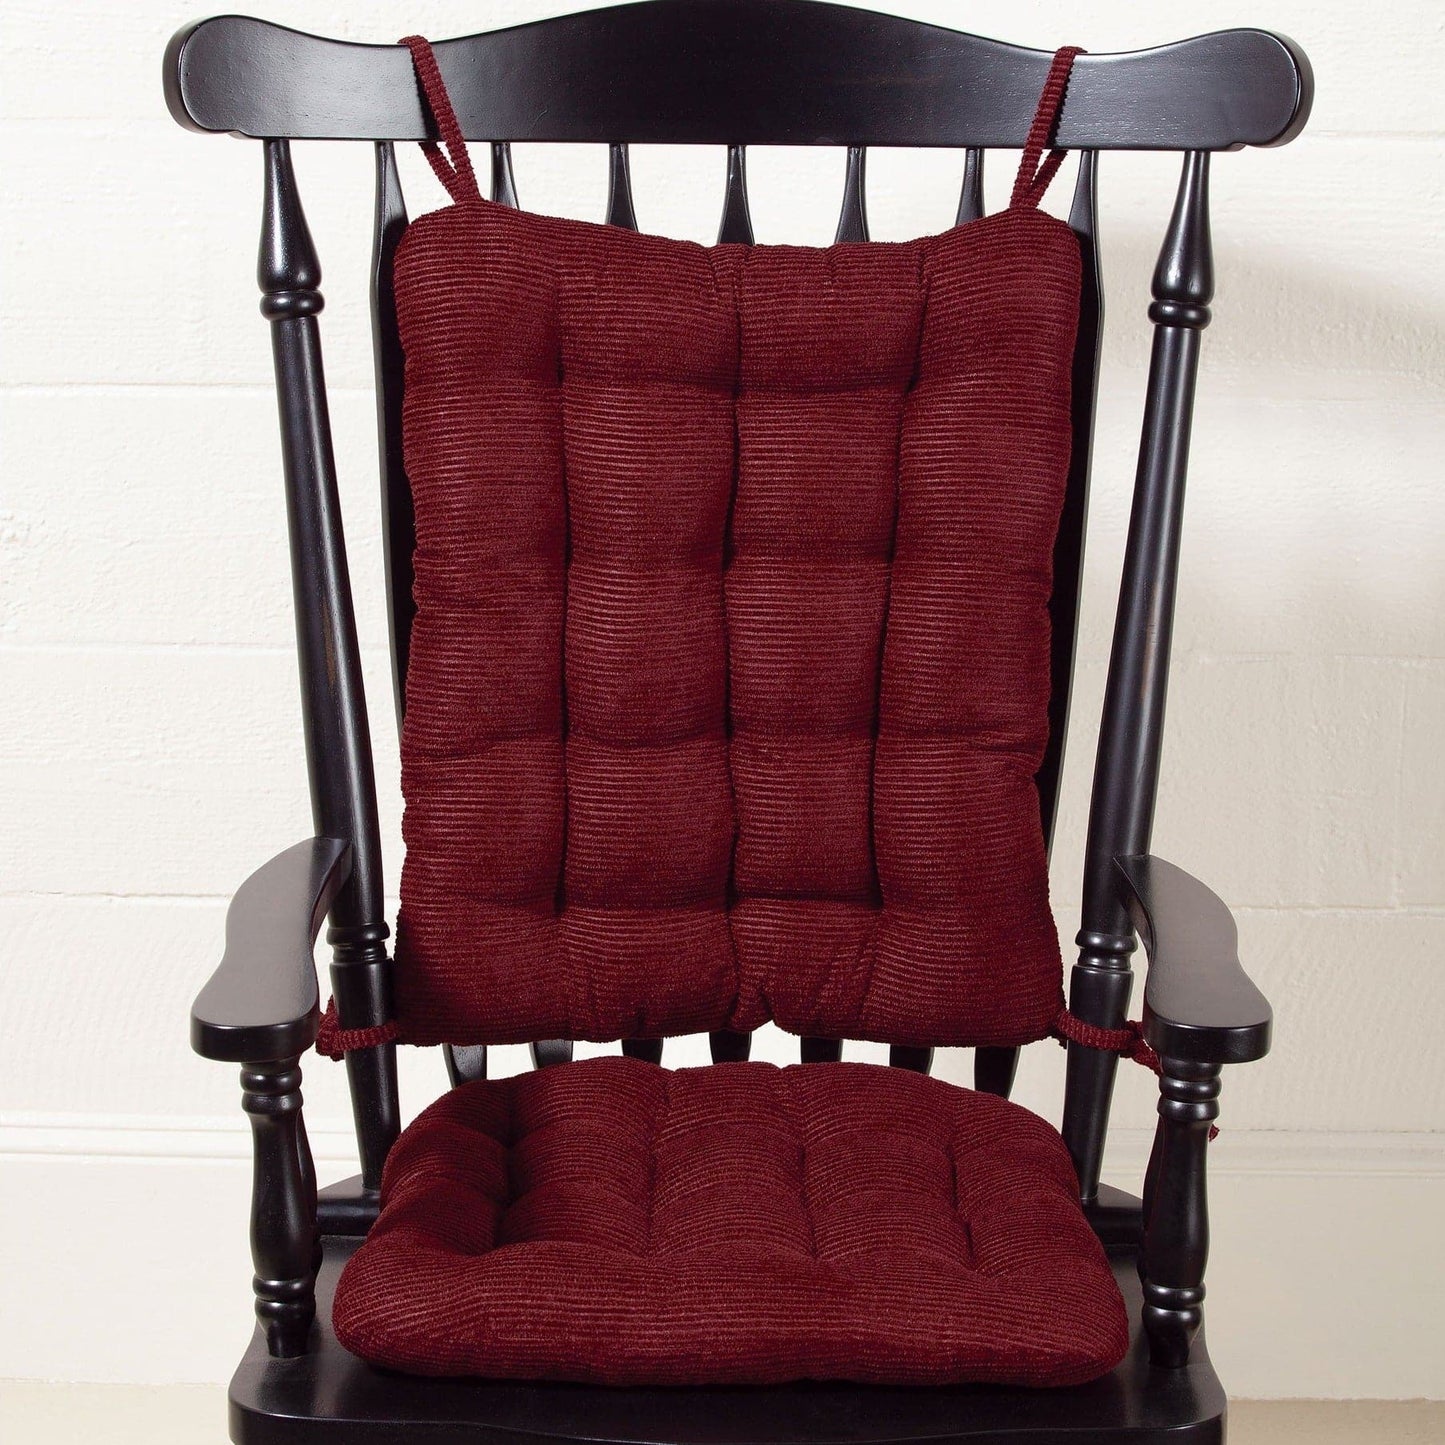 Chenille Rib Rocking Chair Cushions - Latex Foam Fill